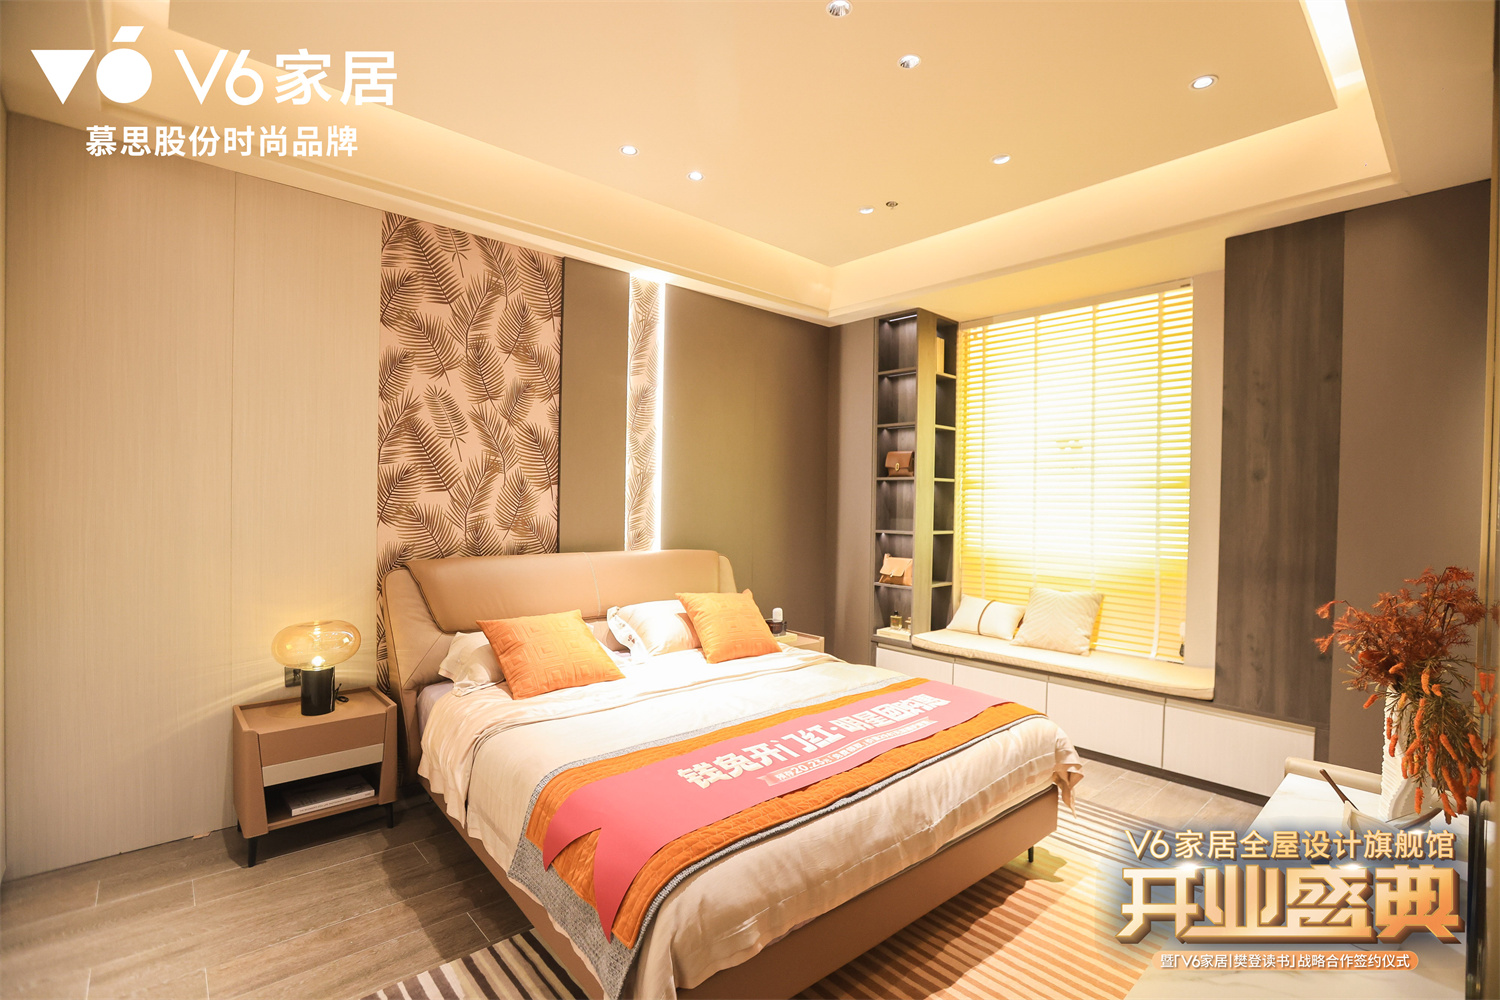 　　△ V6家居苏州旗舰店展示了众多高品质、高颜值的家居产品